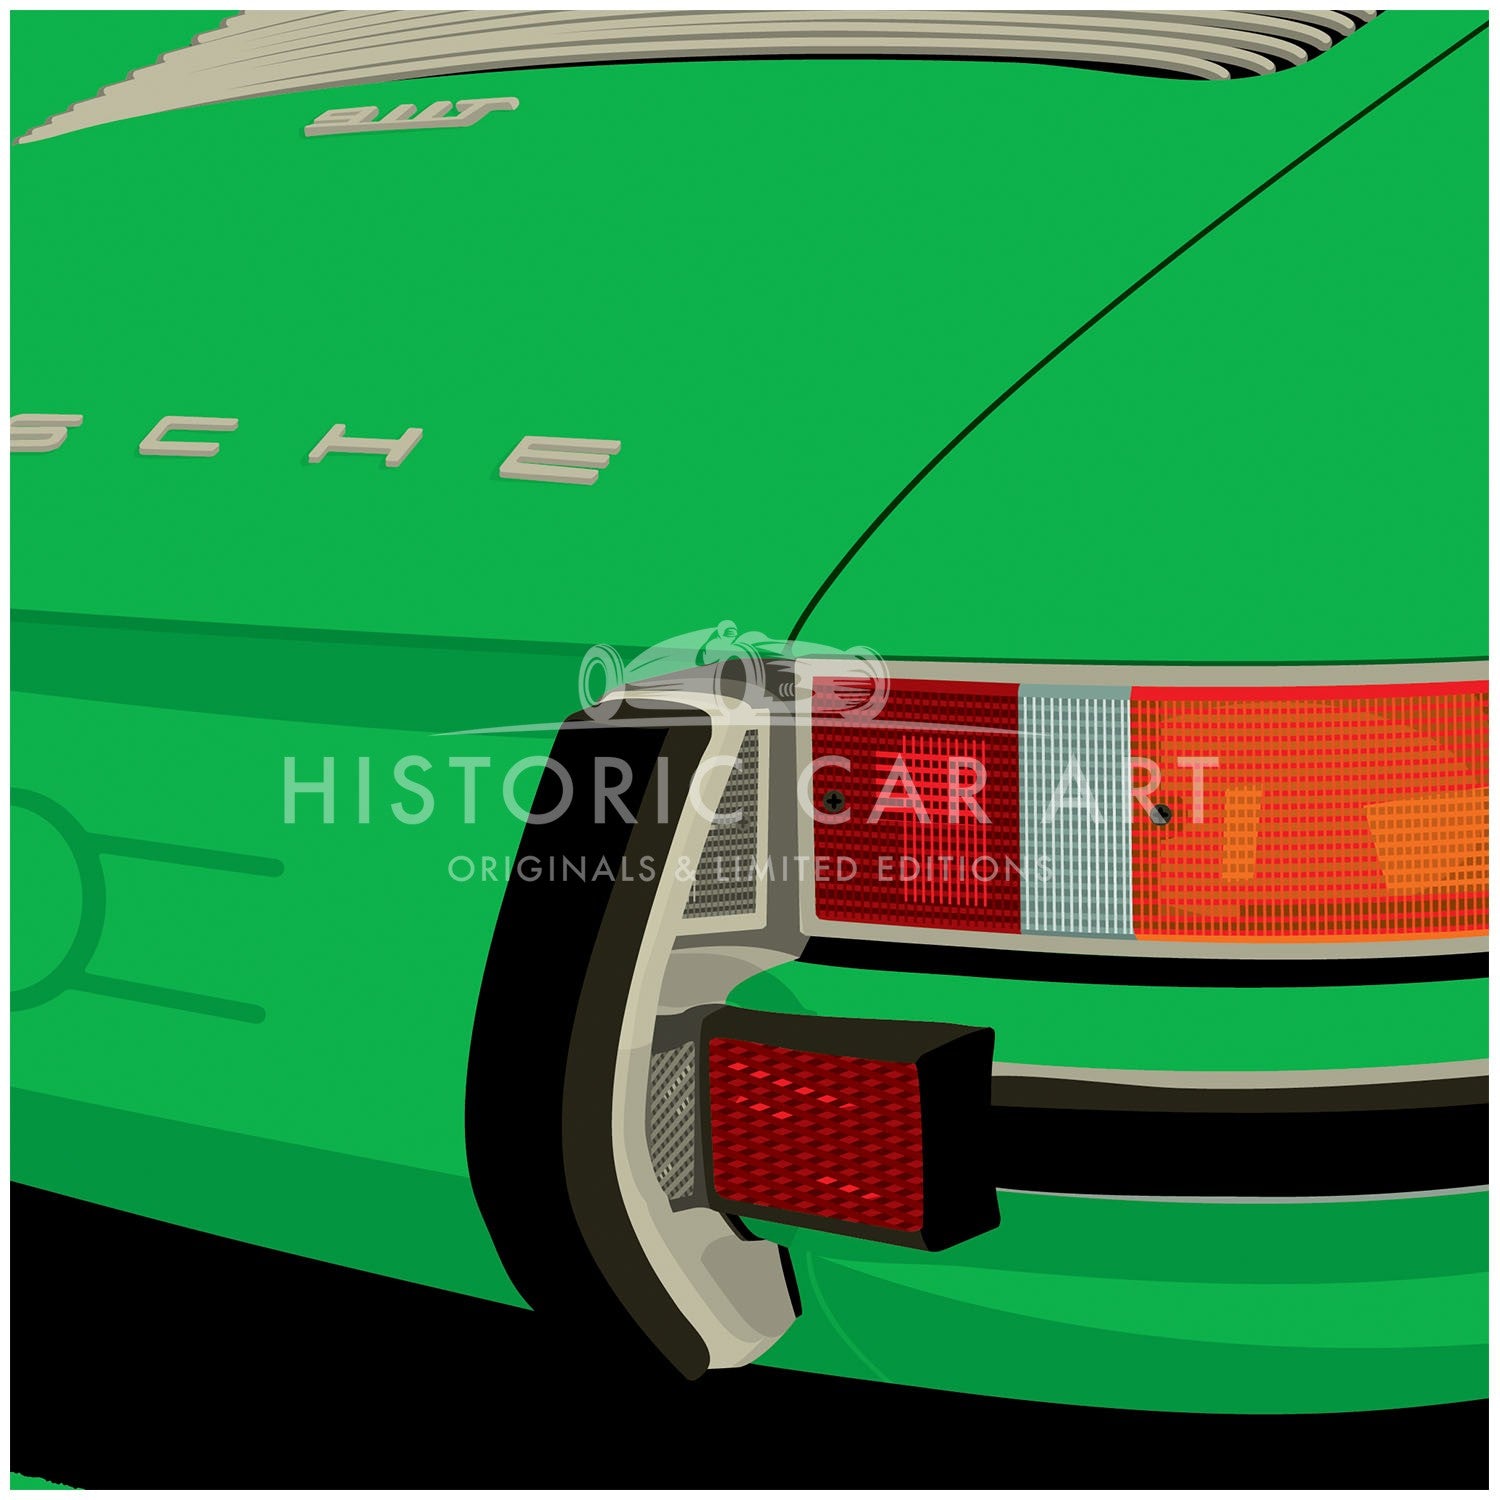 Porsche 911 Rear | Viper Green | Art Print